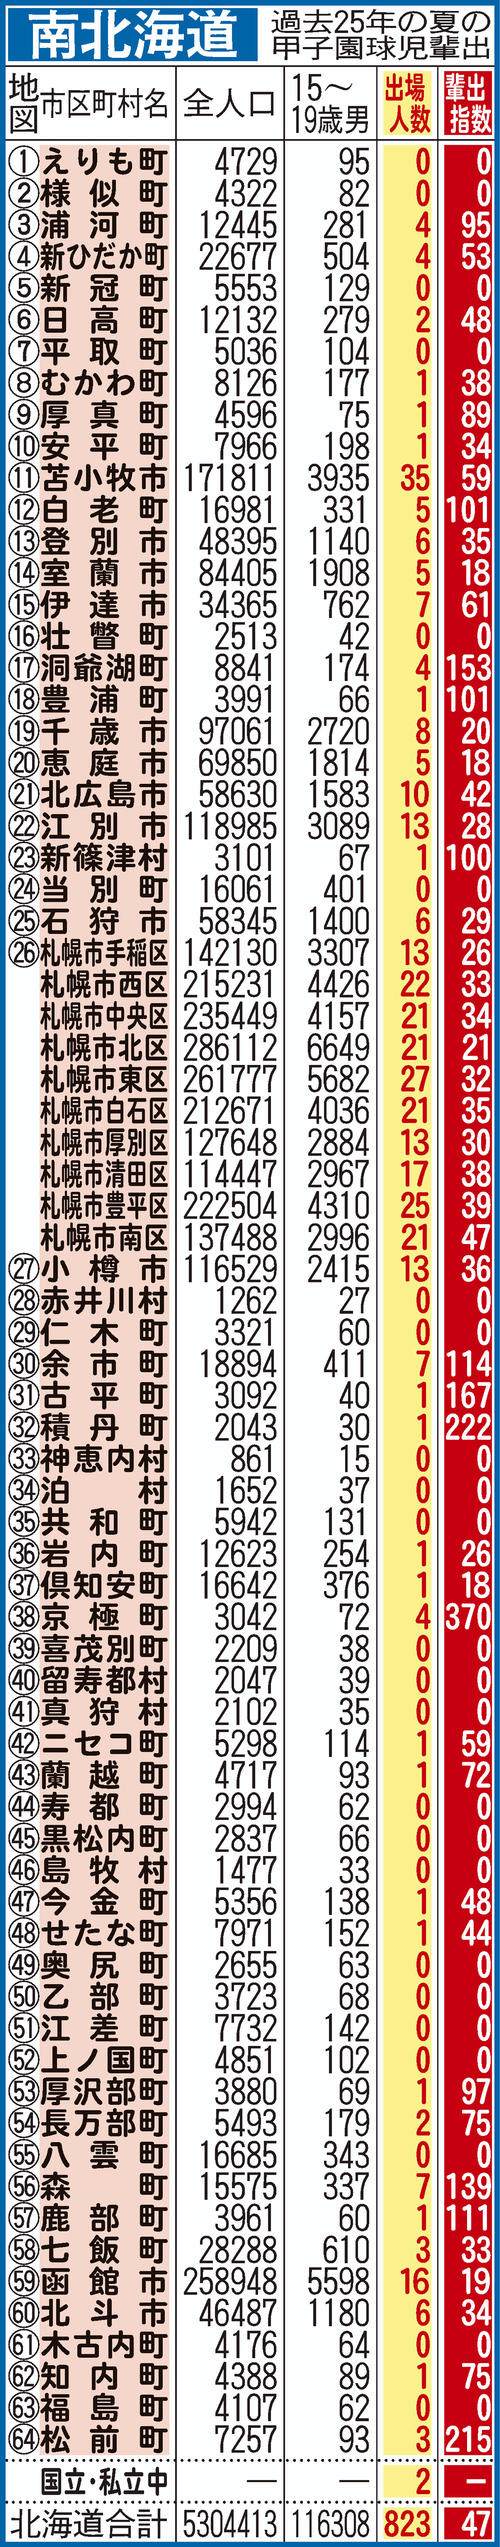 過去25年間における南北海道の甲子園指数